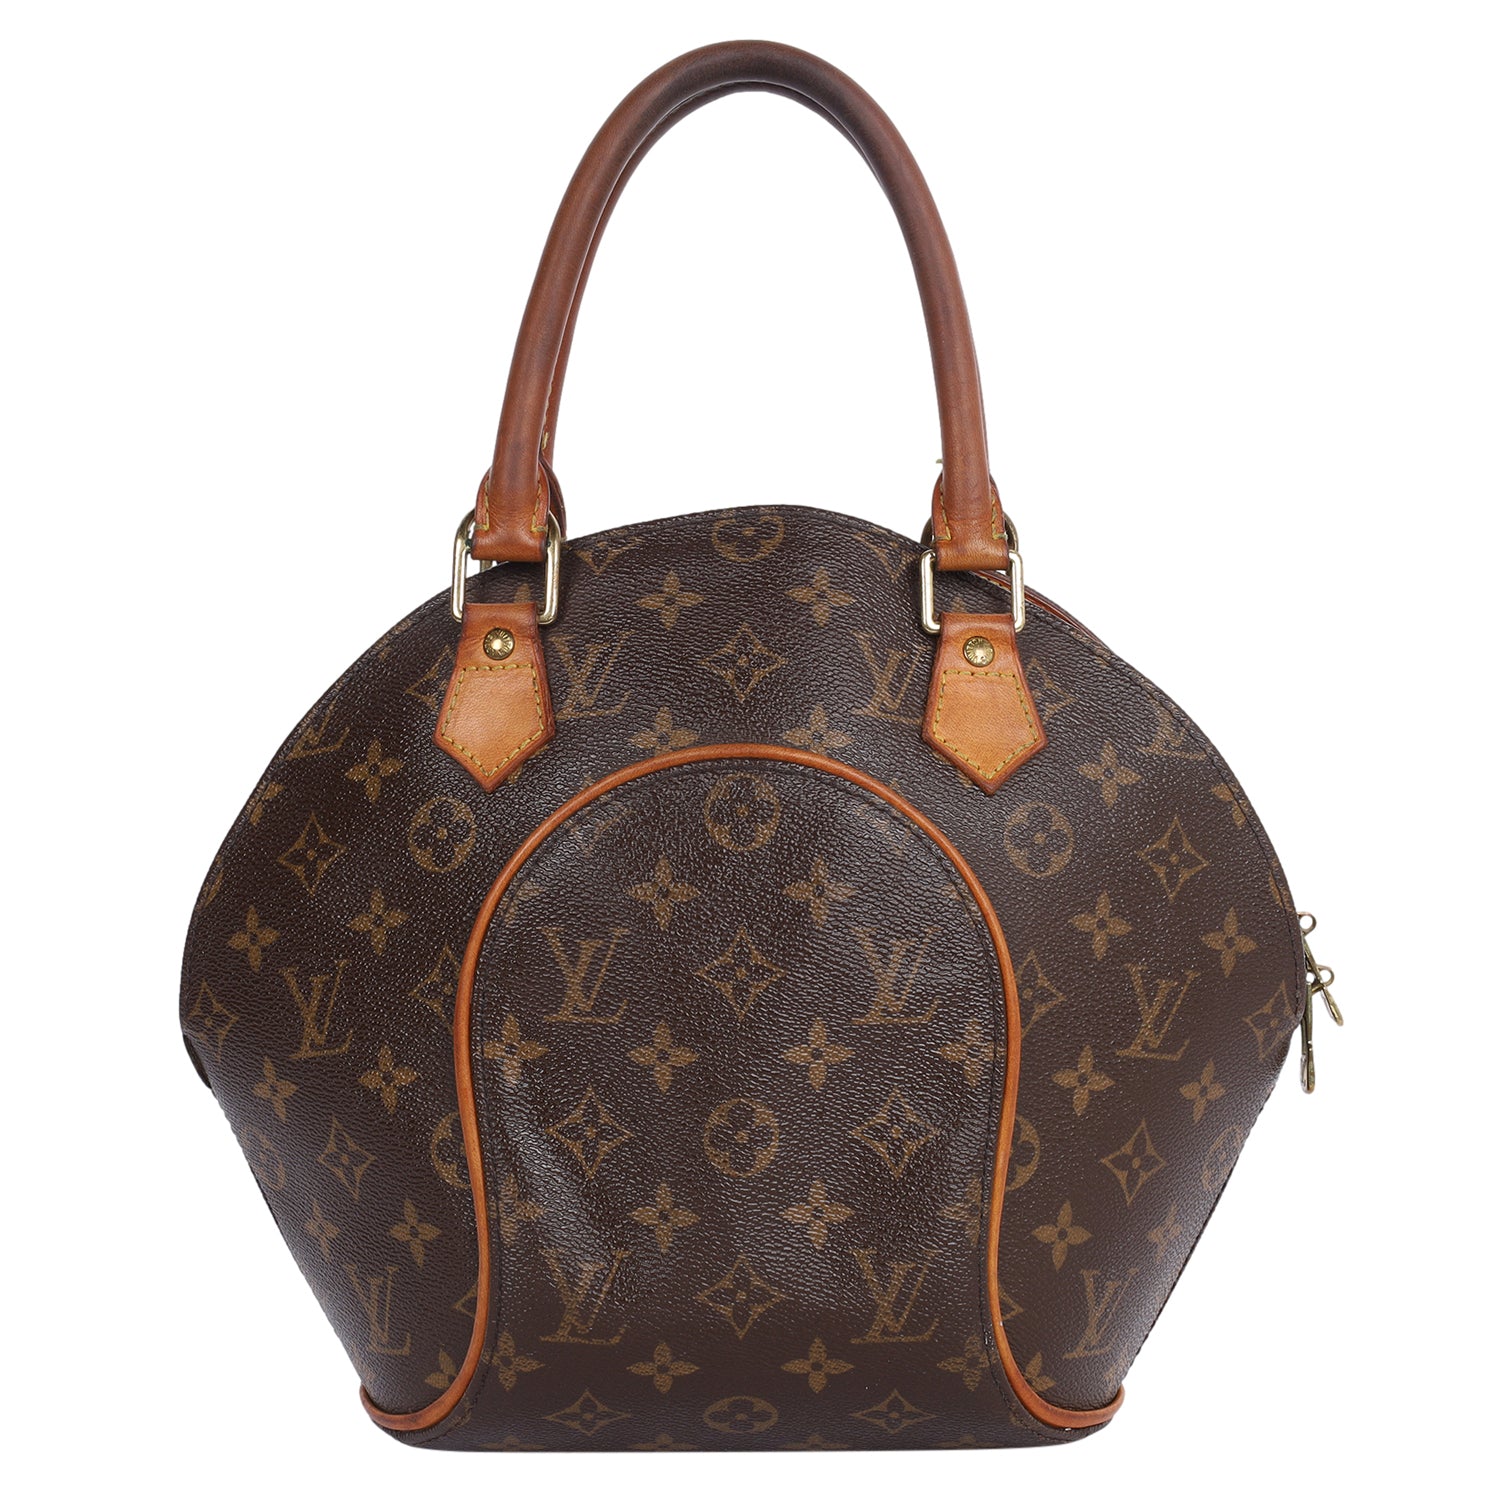 Pre-owned Authentic Louis Vuitton Ellipse PM Monogram Handbag